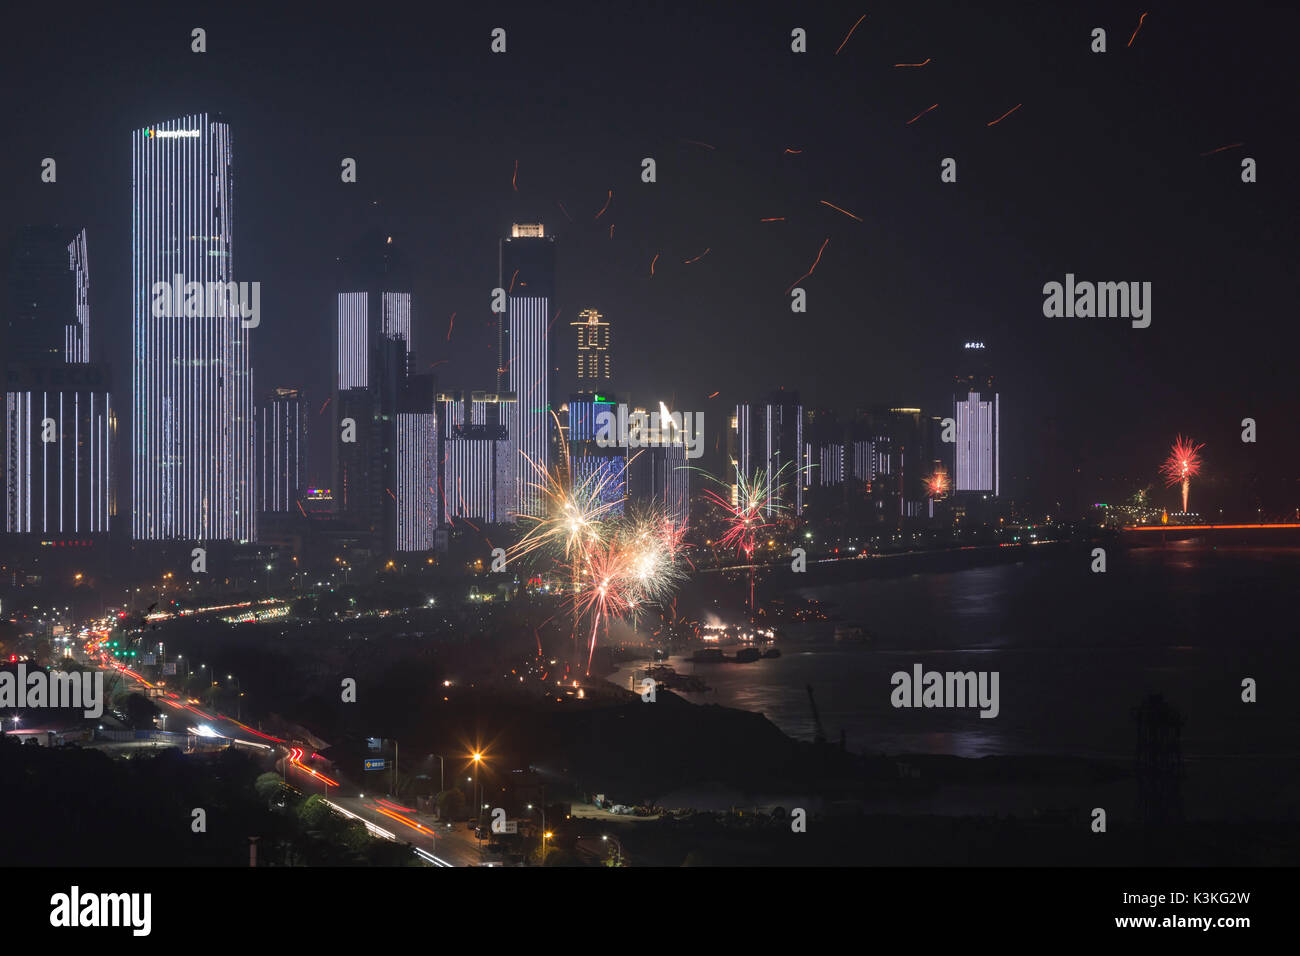 Les célébrations du Nouvel An avec feux d'artifice et des lanternes en papier à Nanchang, la capitale de la province de Jianxi Chine Banque D'Images